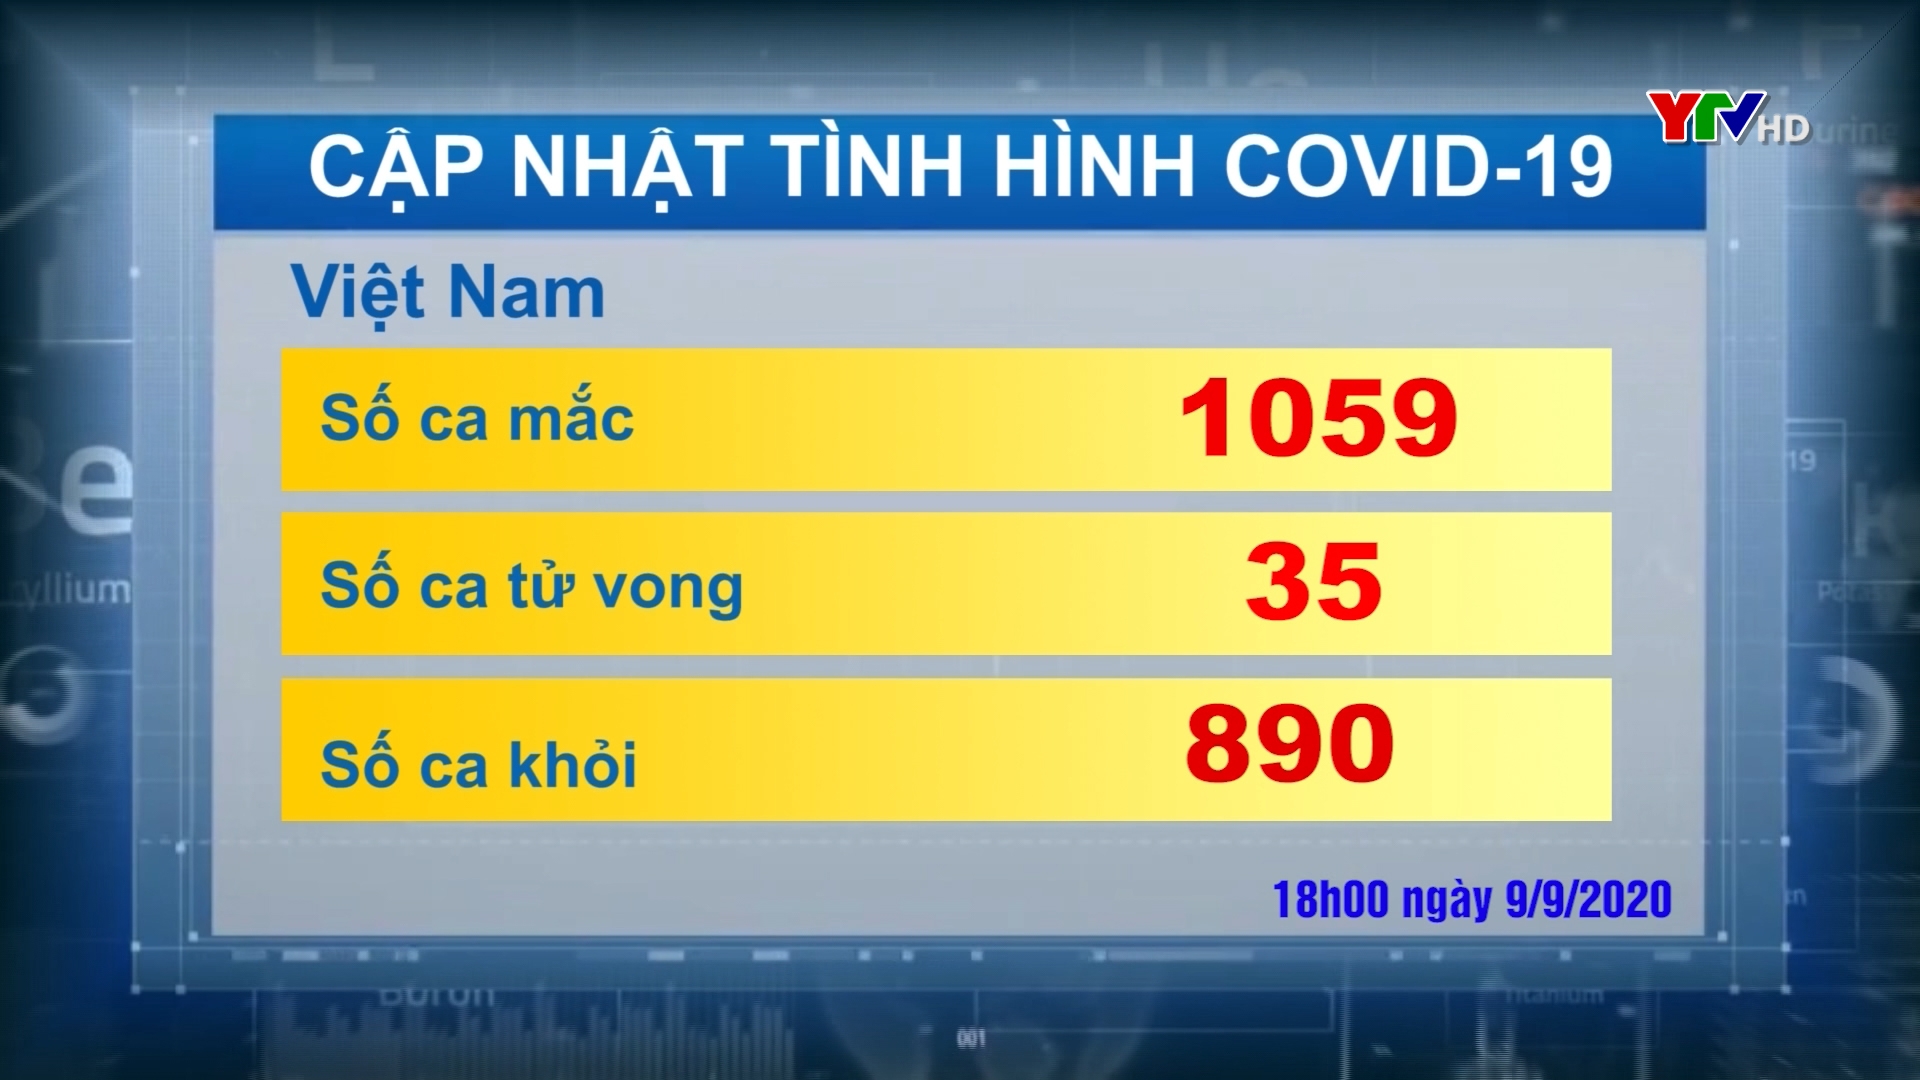 Tổng số ca nhiễm COVID - 19 ở Việt Nam là 1059 trường hợp